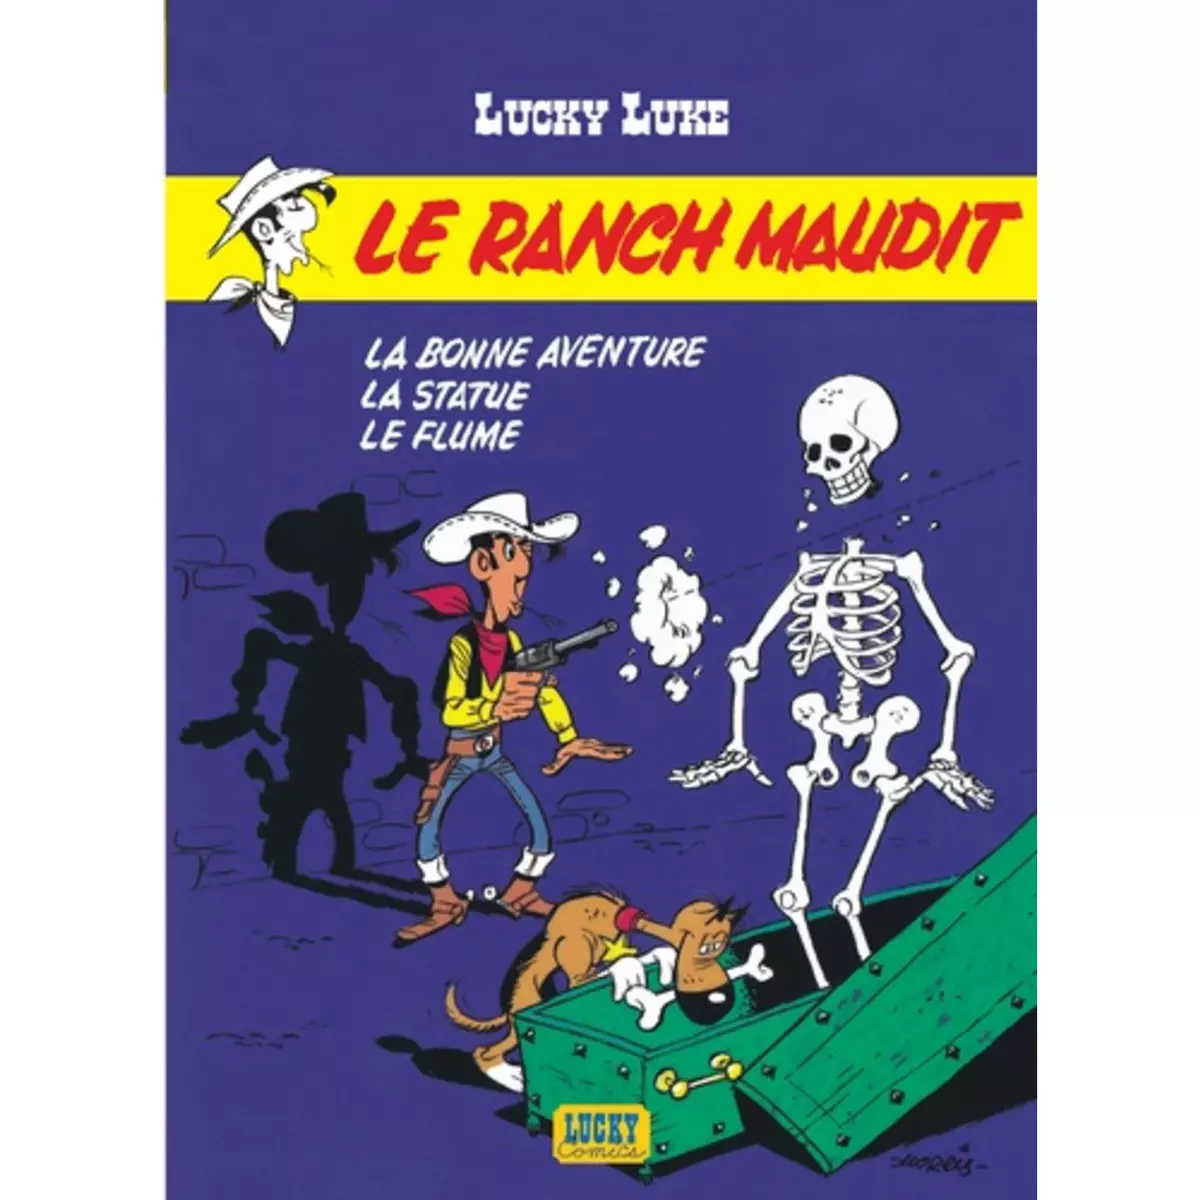  LUCKY LUKE TOME 26 : LE RANCH MAUDIT ; LA BONNE AVENTURE ; LA STATUE ; LE FLUME, Morris